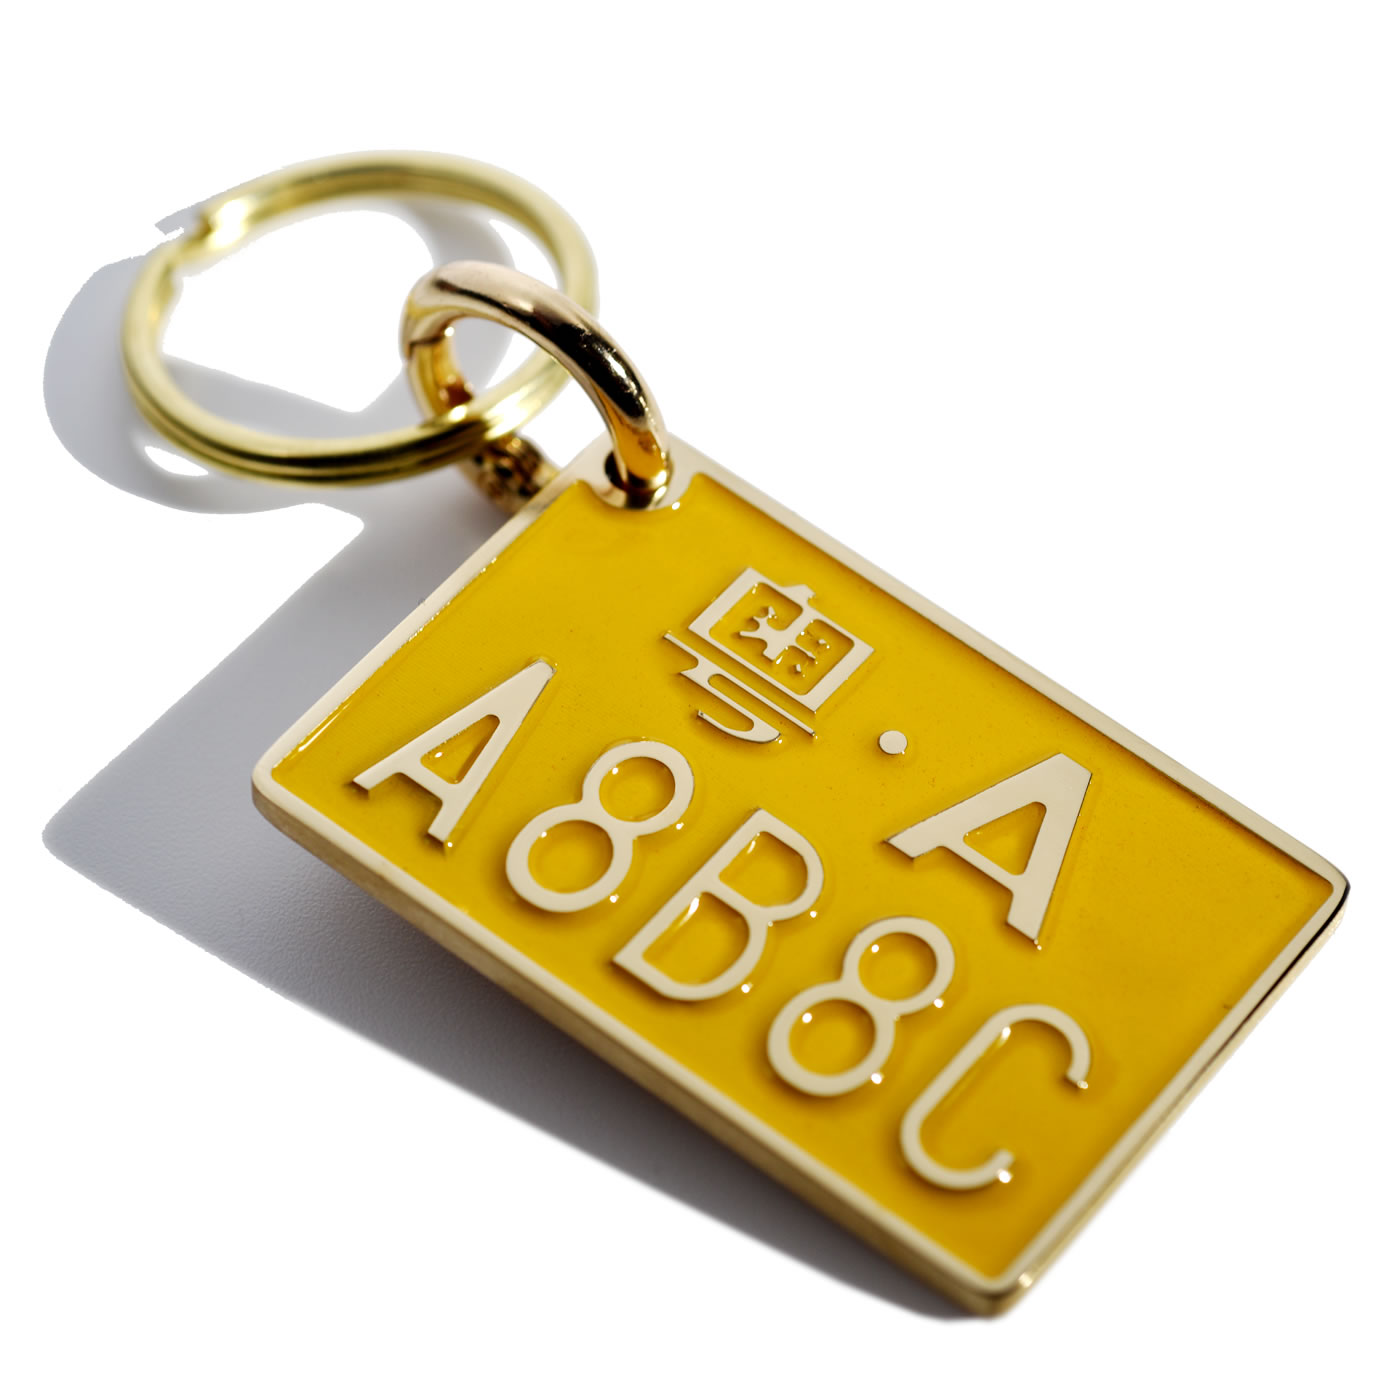 机车钥匙创意定制雕刻照片摩托车黄牌钥匙扣车标钥匙牌不锈钢黄铜